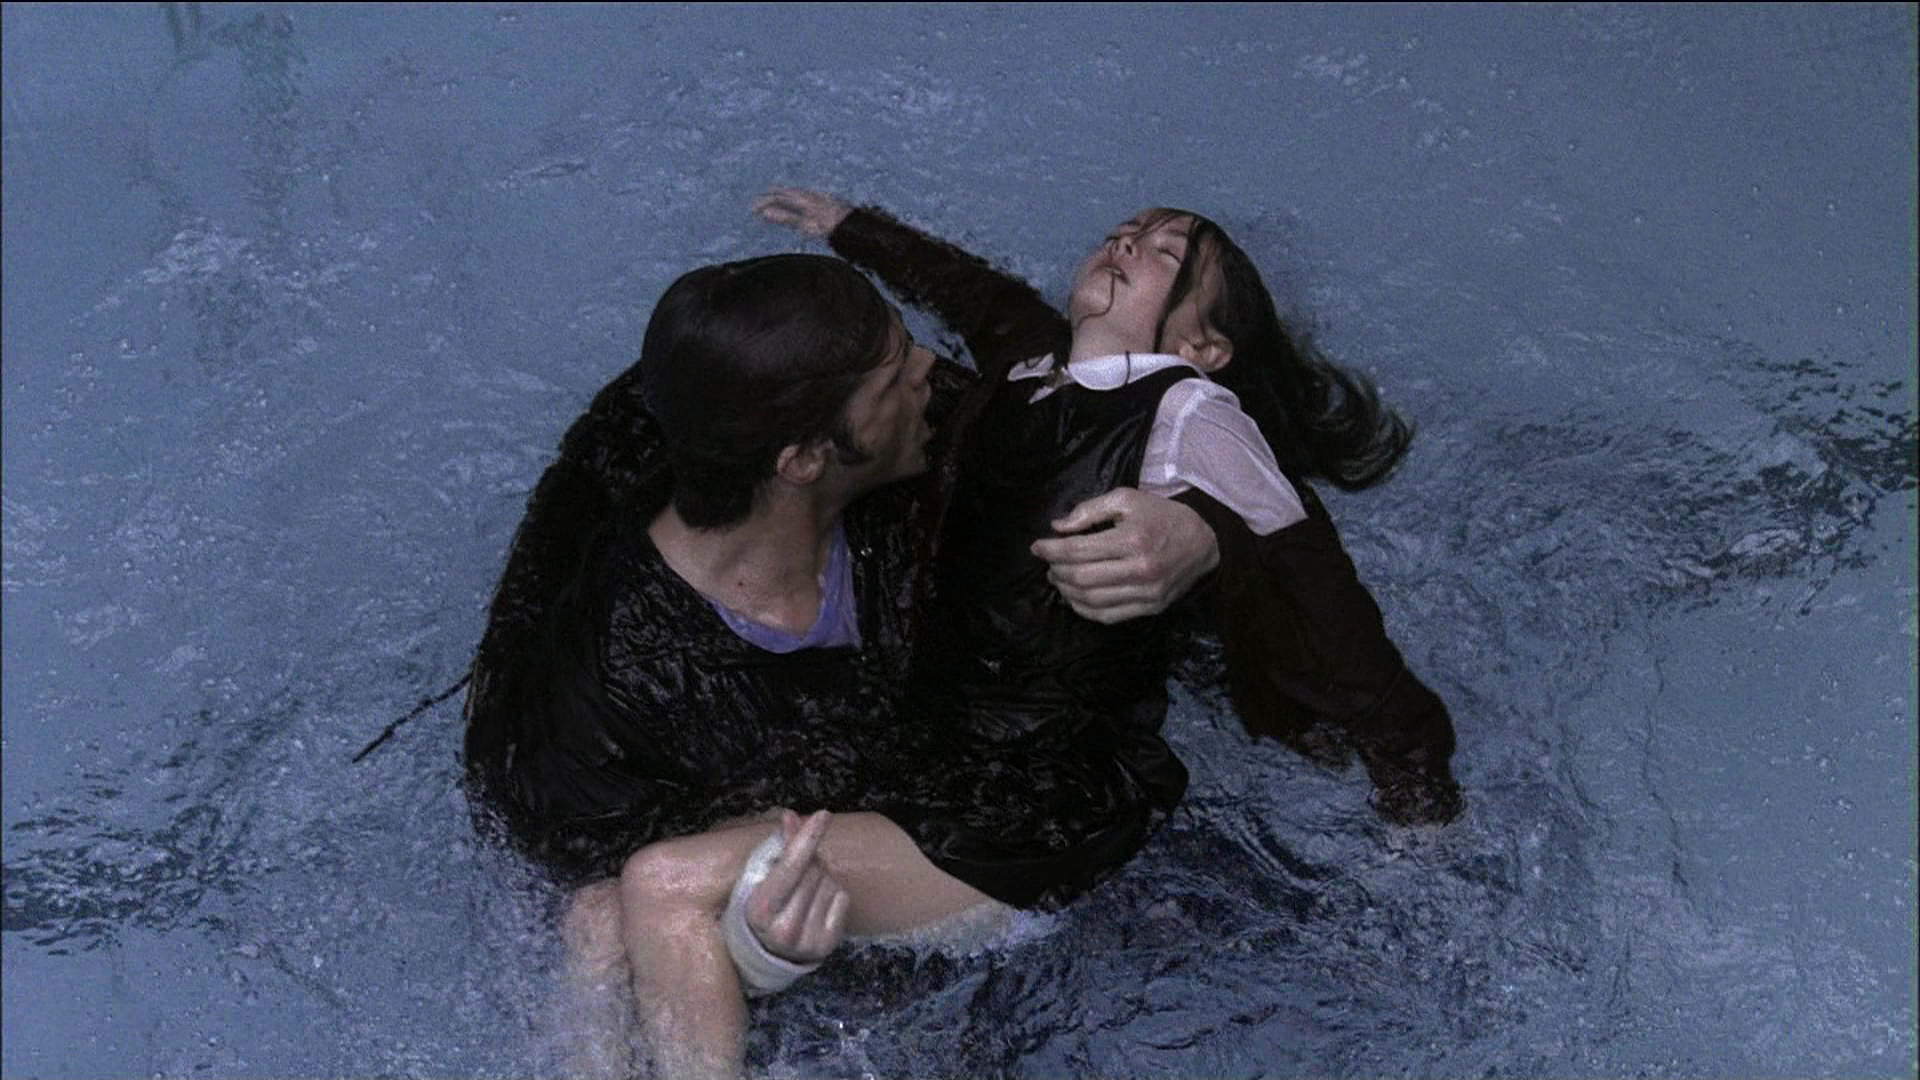 Парень спасает девушку из воды